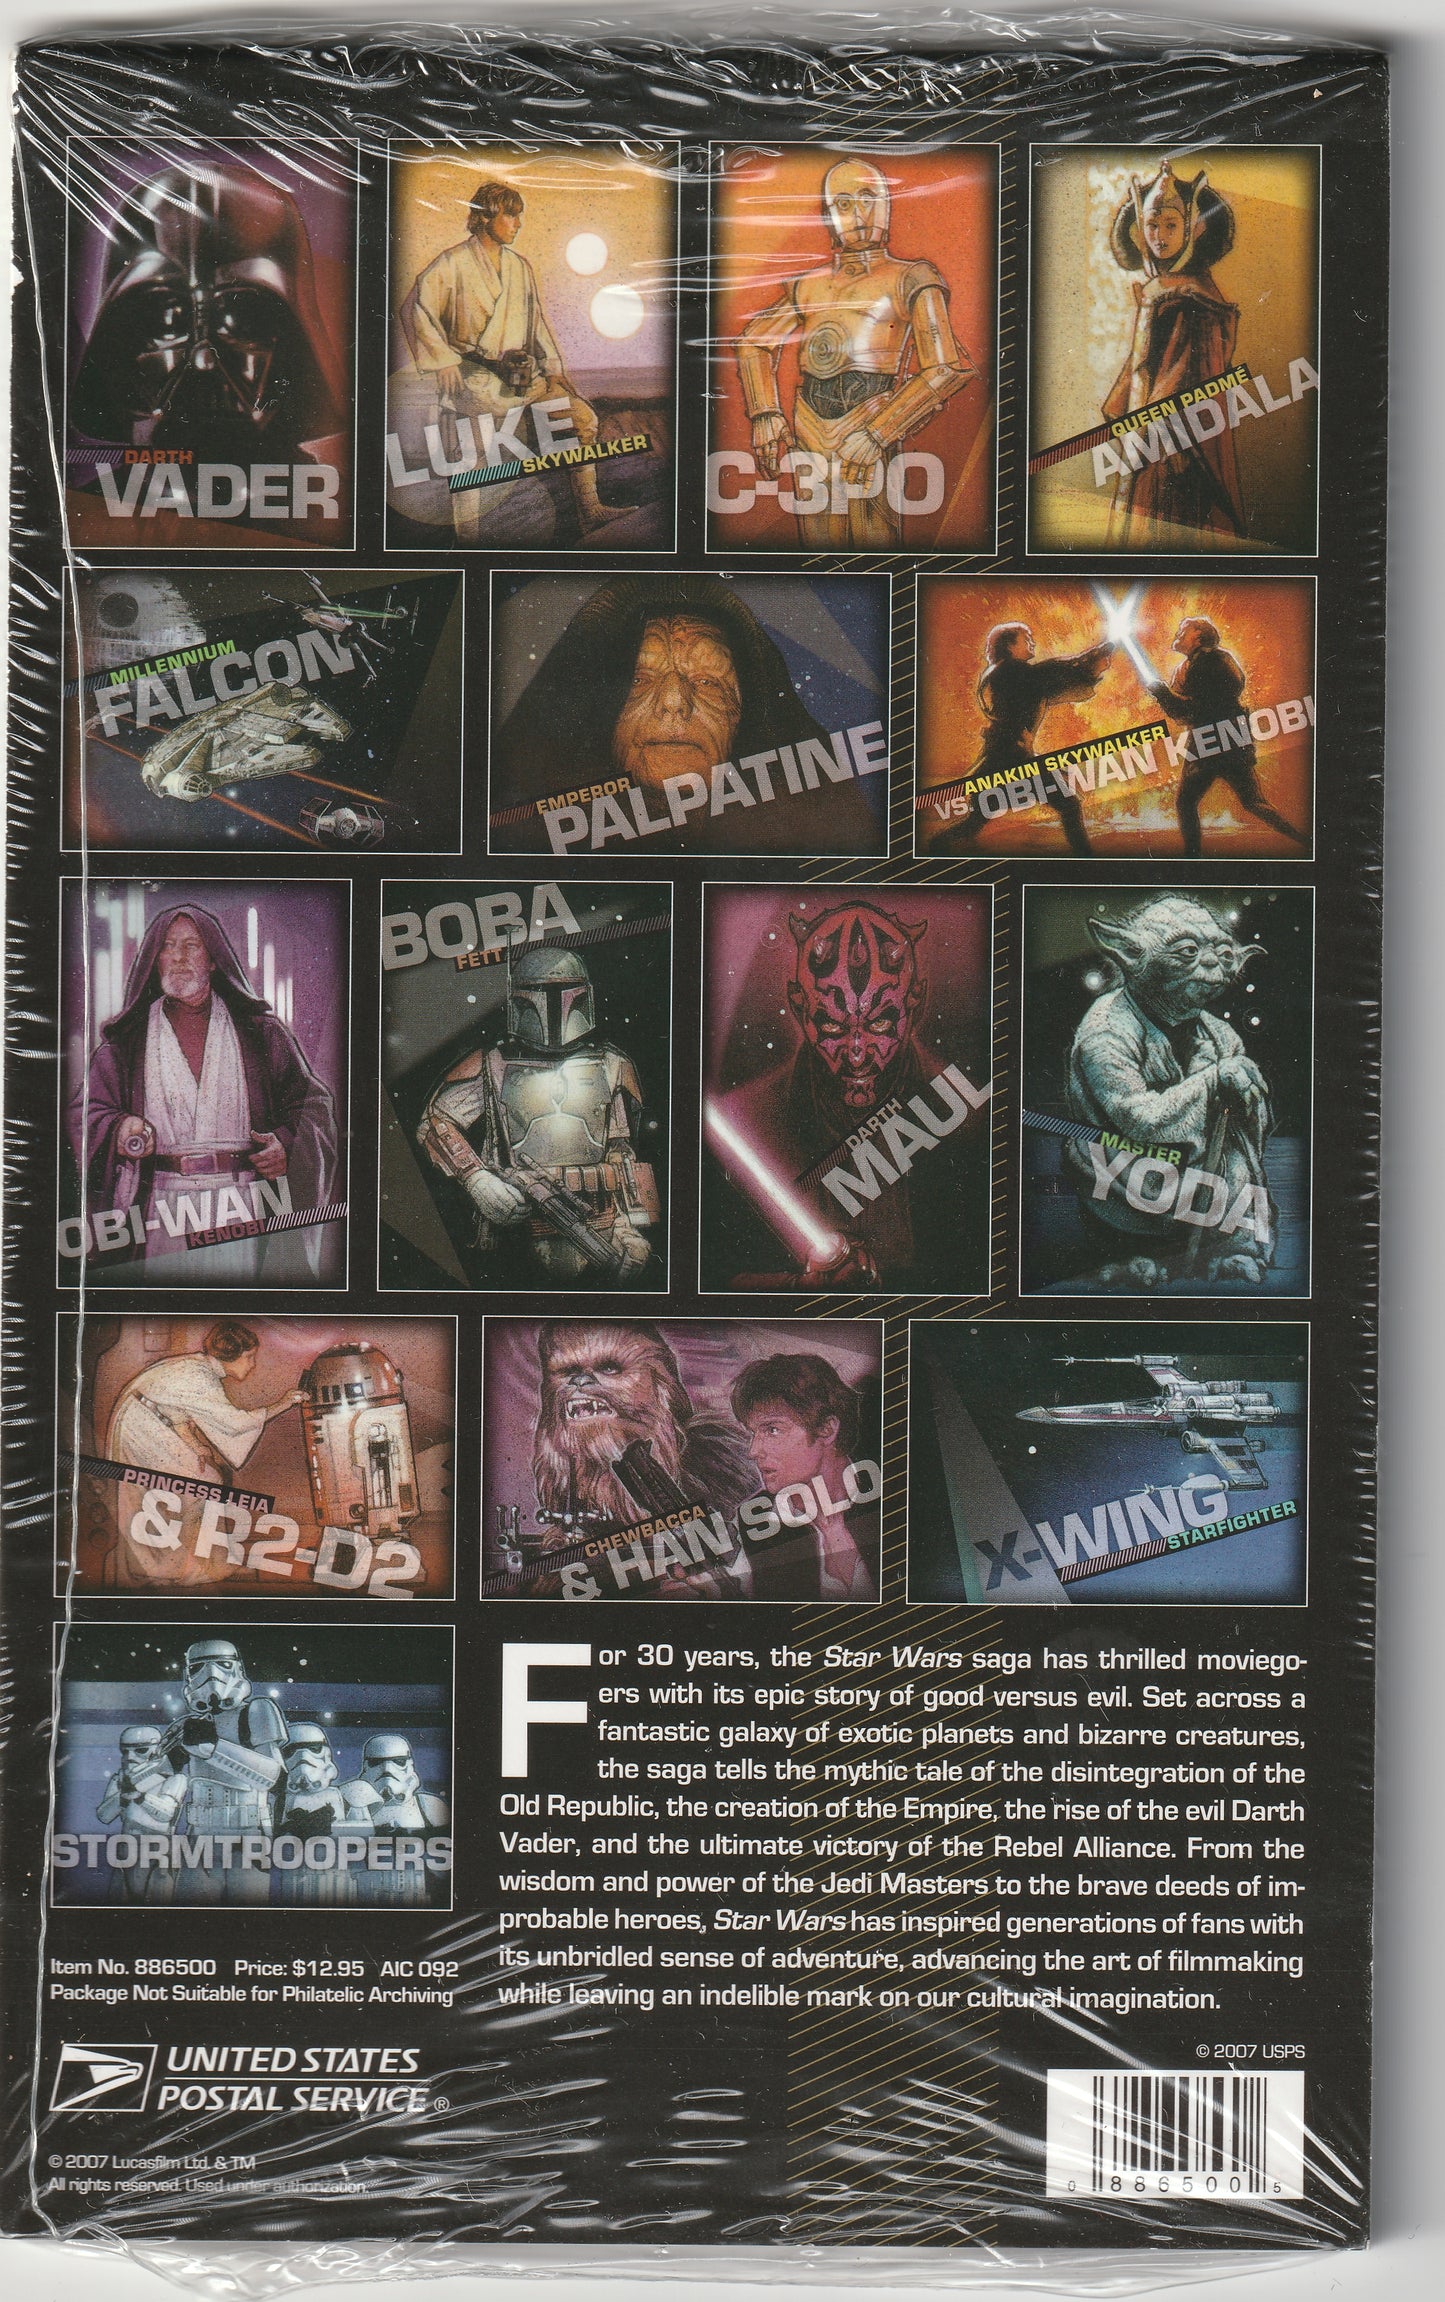 Unopened Premium Stamped Cards (15) - Star Wars